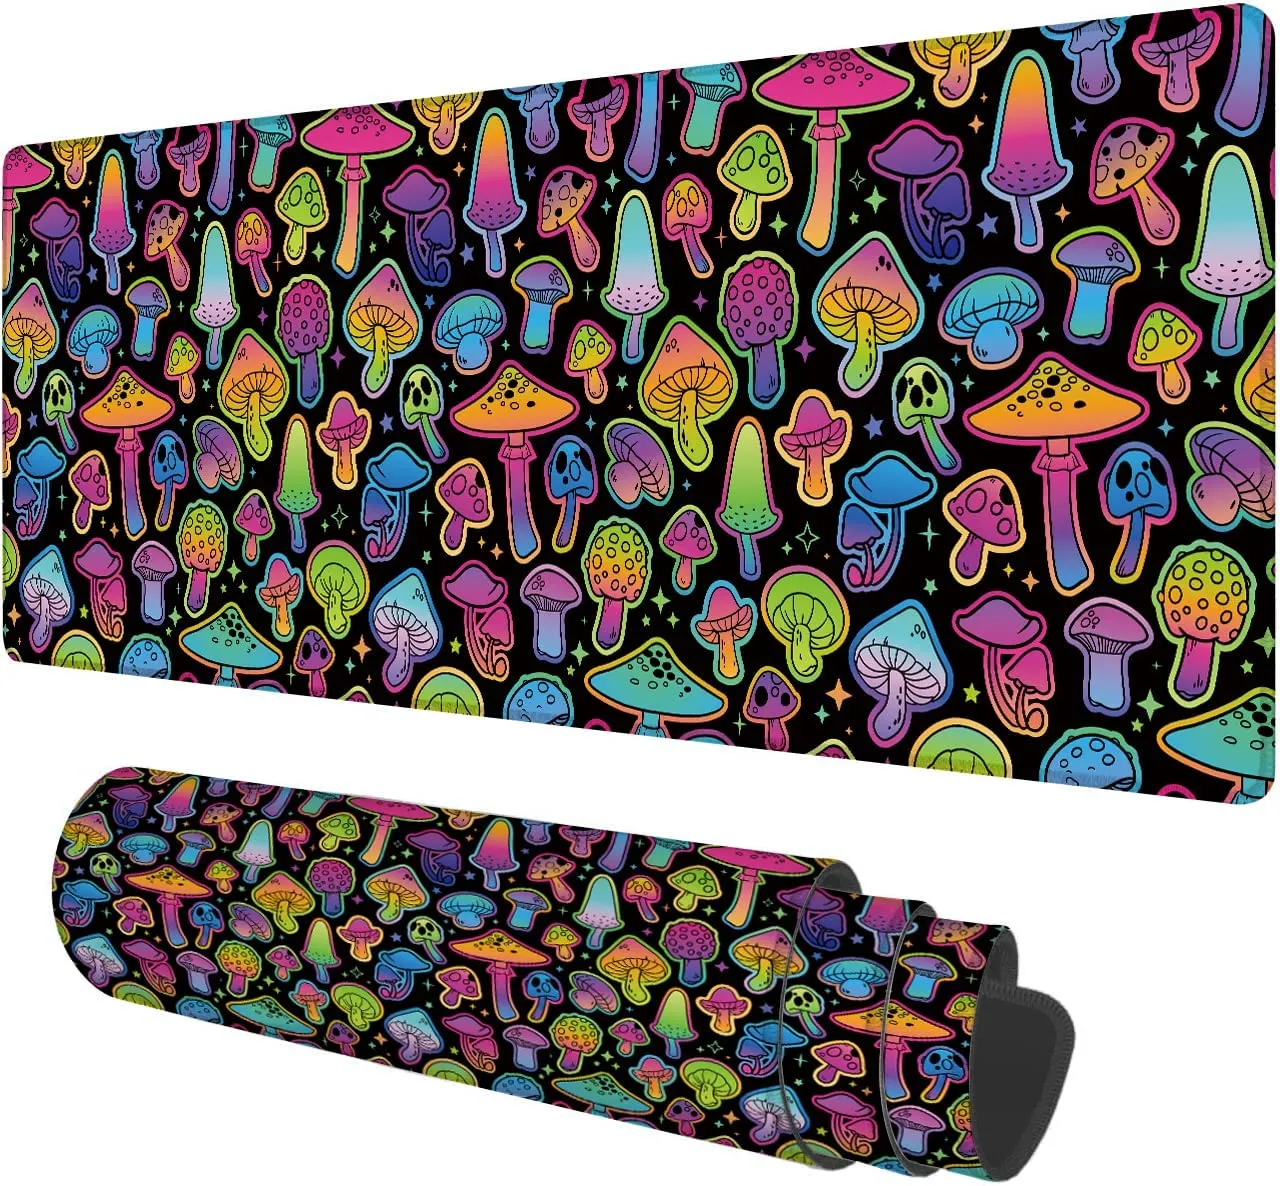 Grand tapis de souris coloré champignons psychédéliques lumineux grand tapis de bureau XL tapis de souris étanche étendu 31,5 x 11,8 pouces